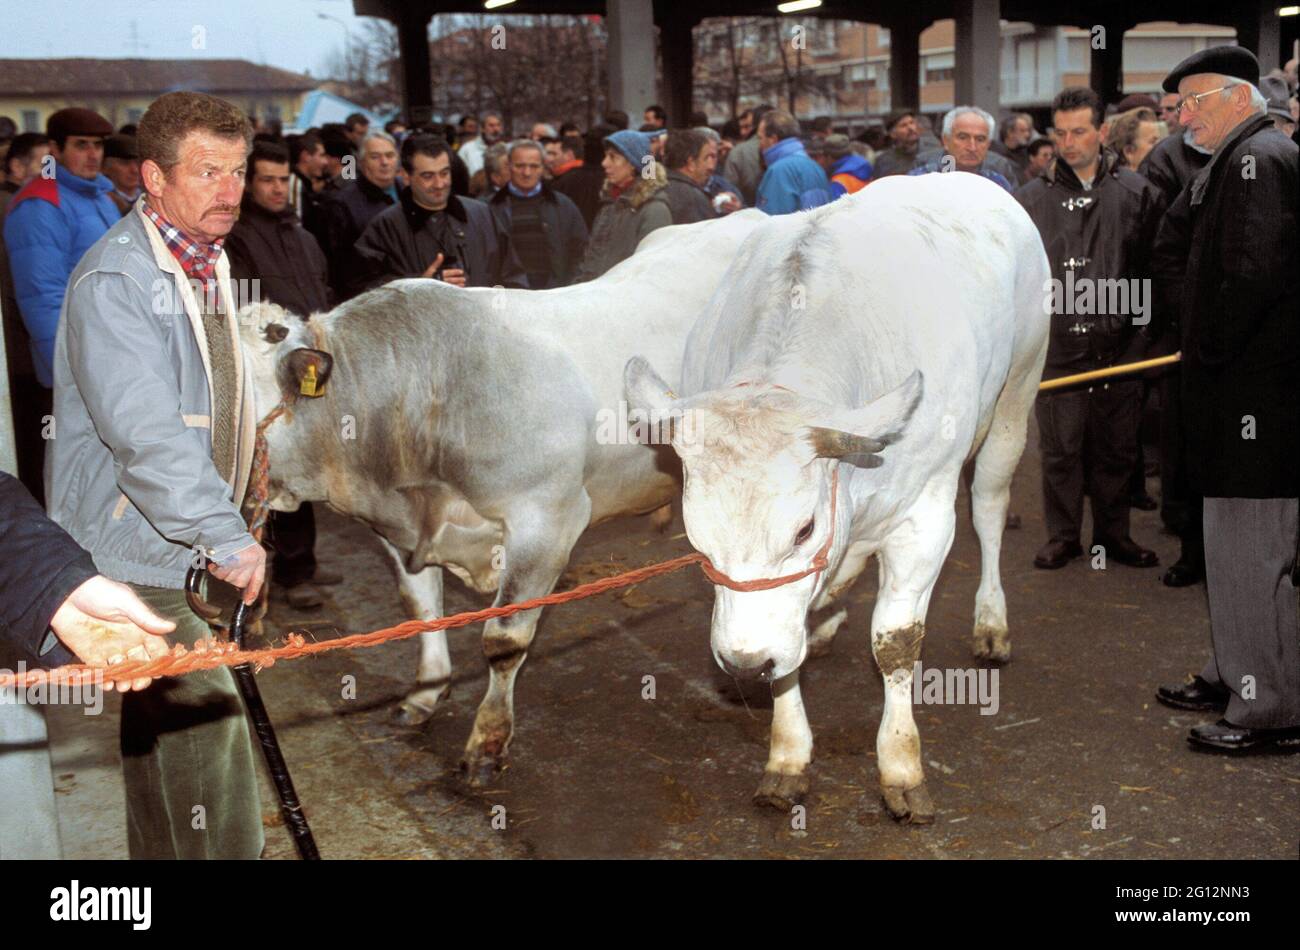 Traditionelles Fest des 'Bue Grasso' (fetter Ochse) in Carrù (Cuneo, Piemont, Italien), Jahrmarkt der 'weißen piemontesischen' Rasse Vieh, eines der ältesten in Italien Stockfoto